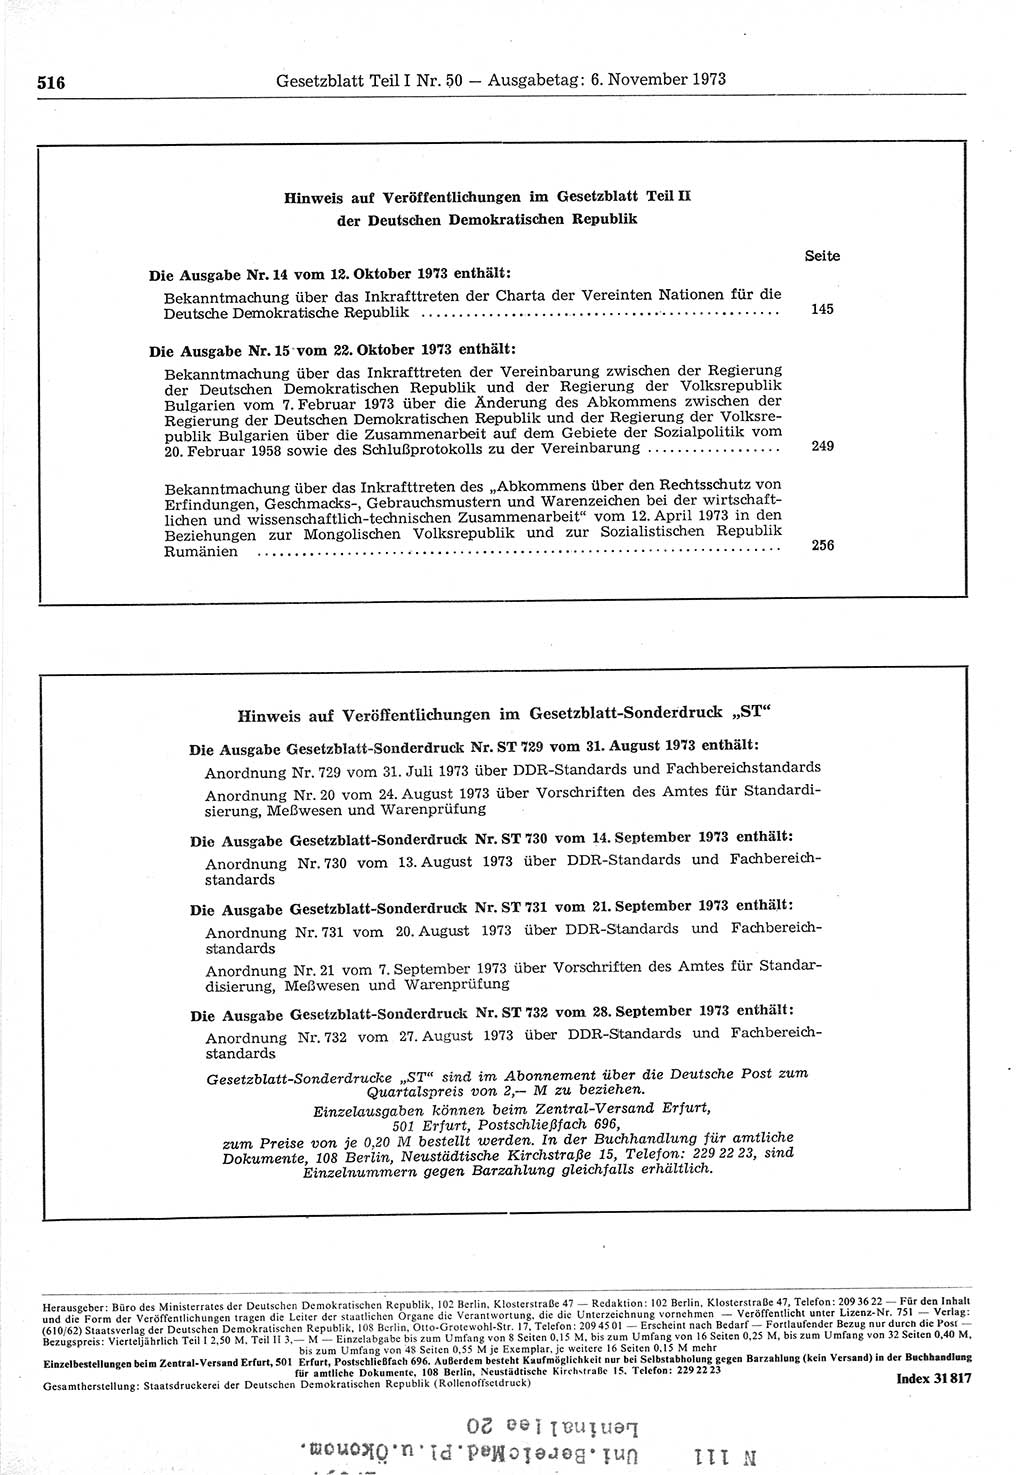 Gesetzblatt (GBl.) der Deutschen Demokratischen Republik (DDR) Teil Ⅰ 1973, Seite 516 (GBl. DDR Ⅰ 1973, S. 516)